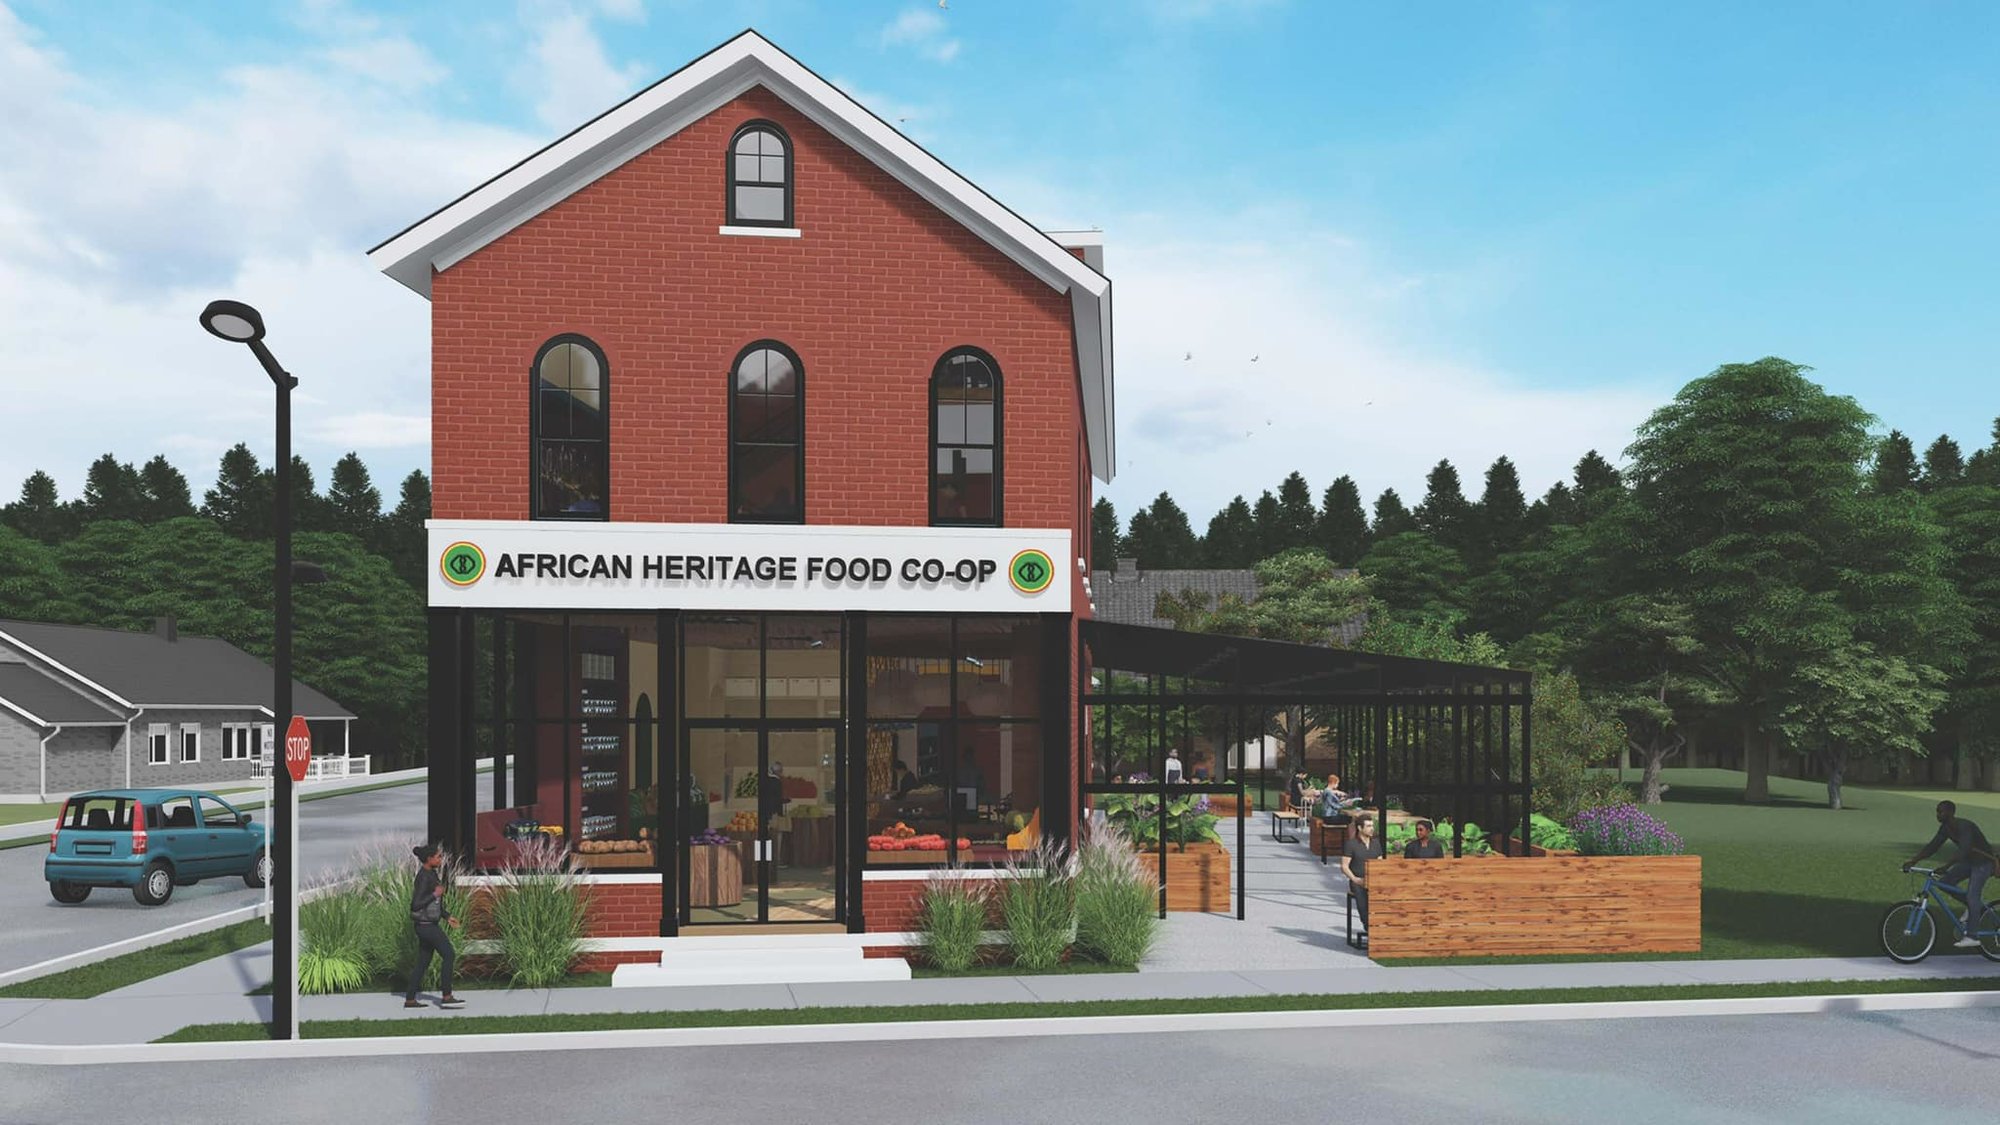 African Heritage Food Co-op